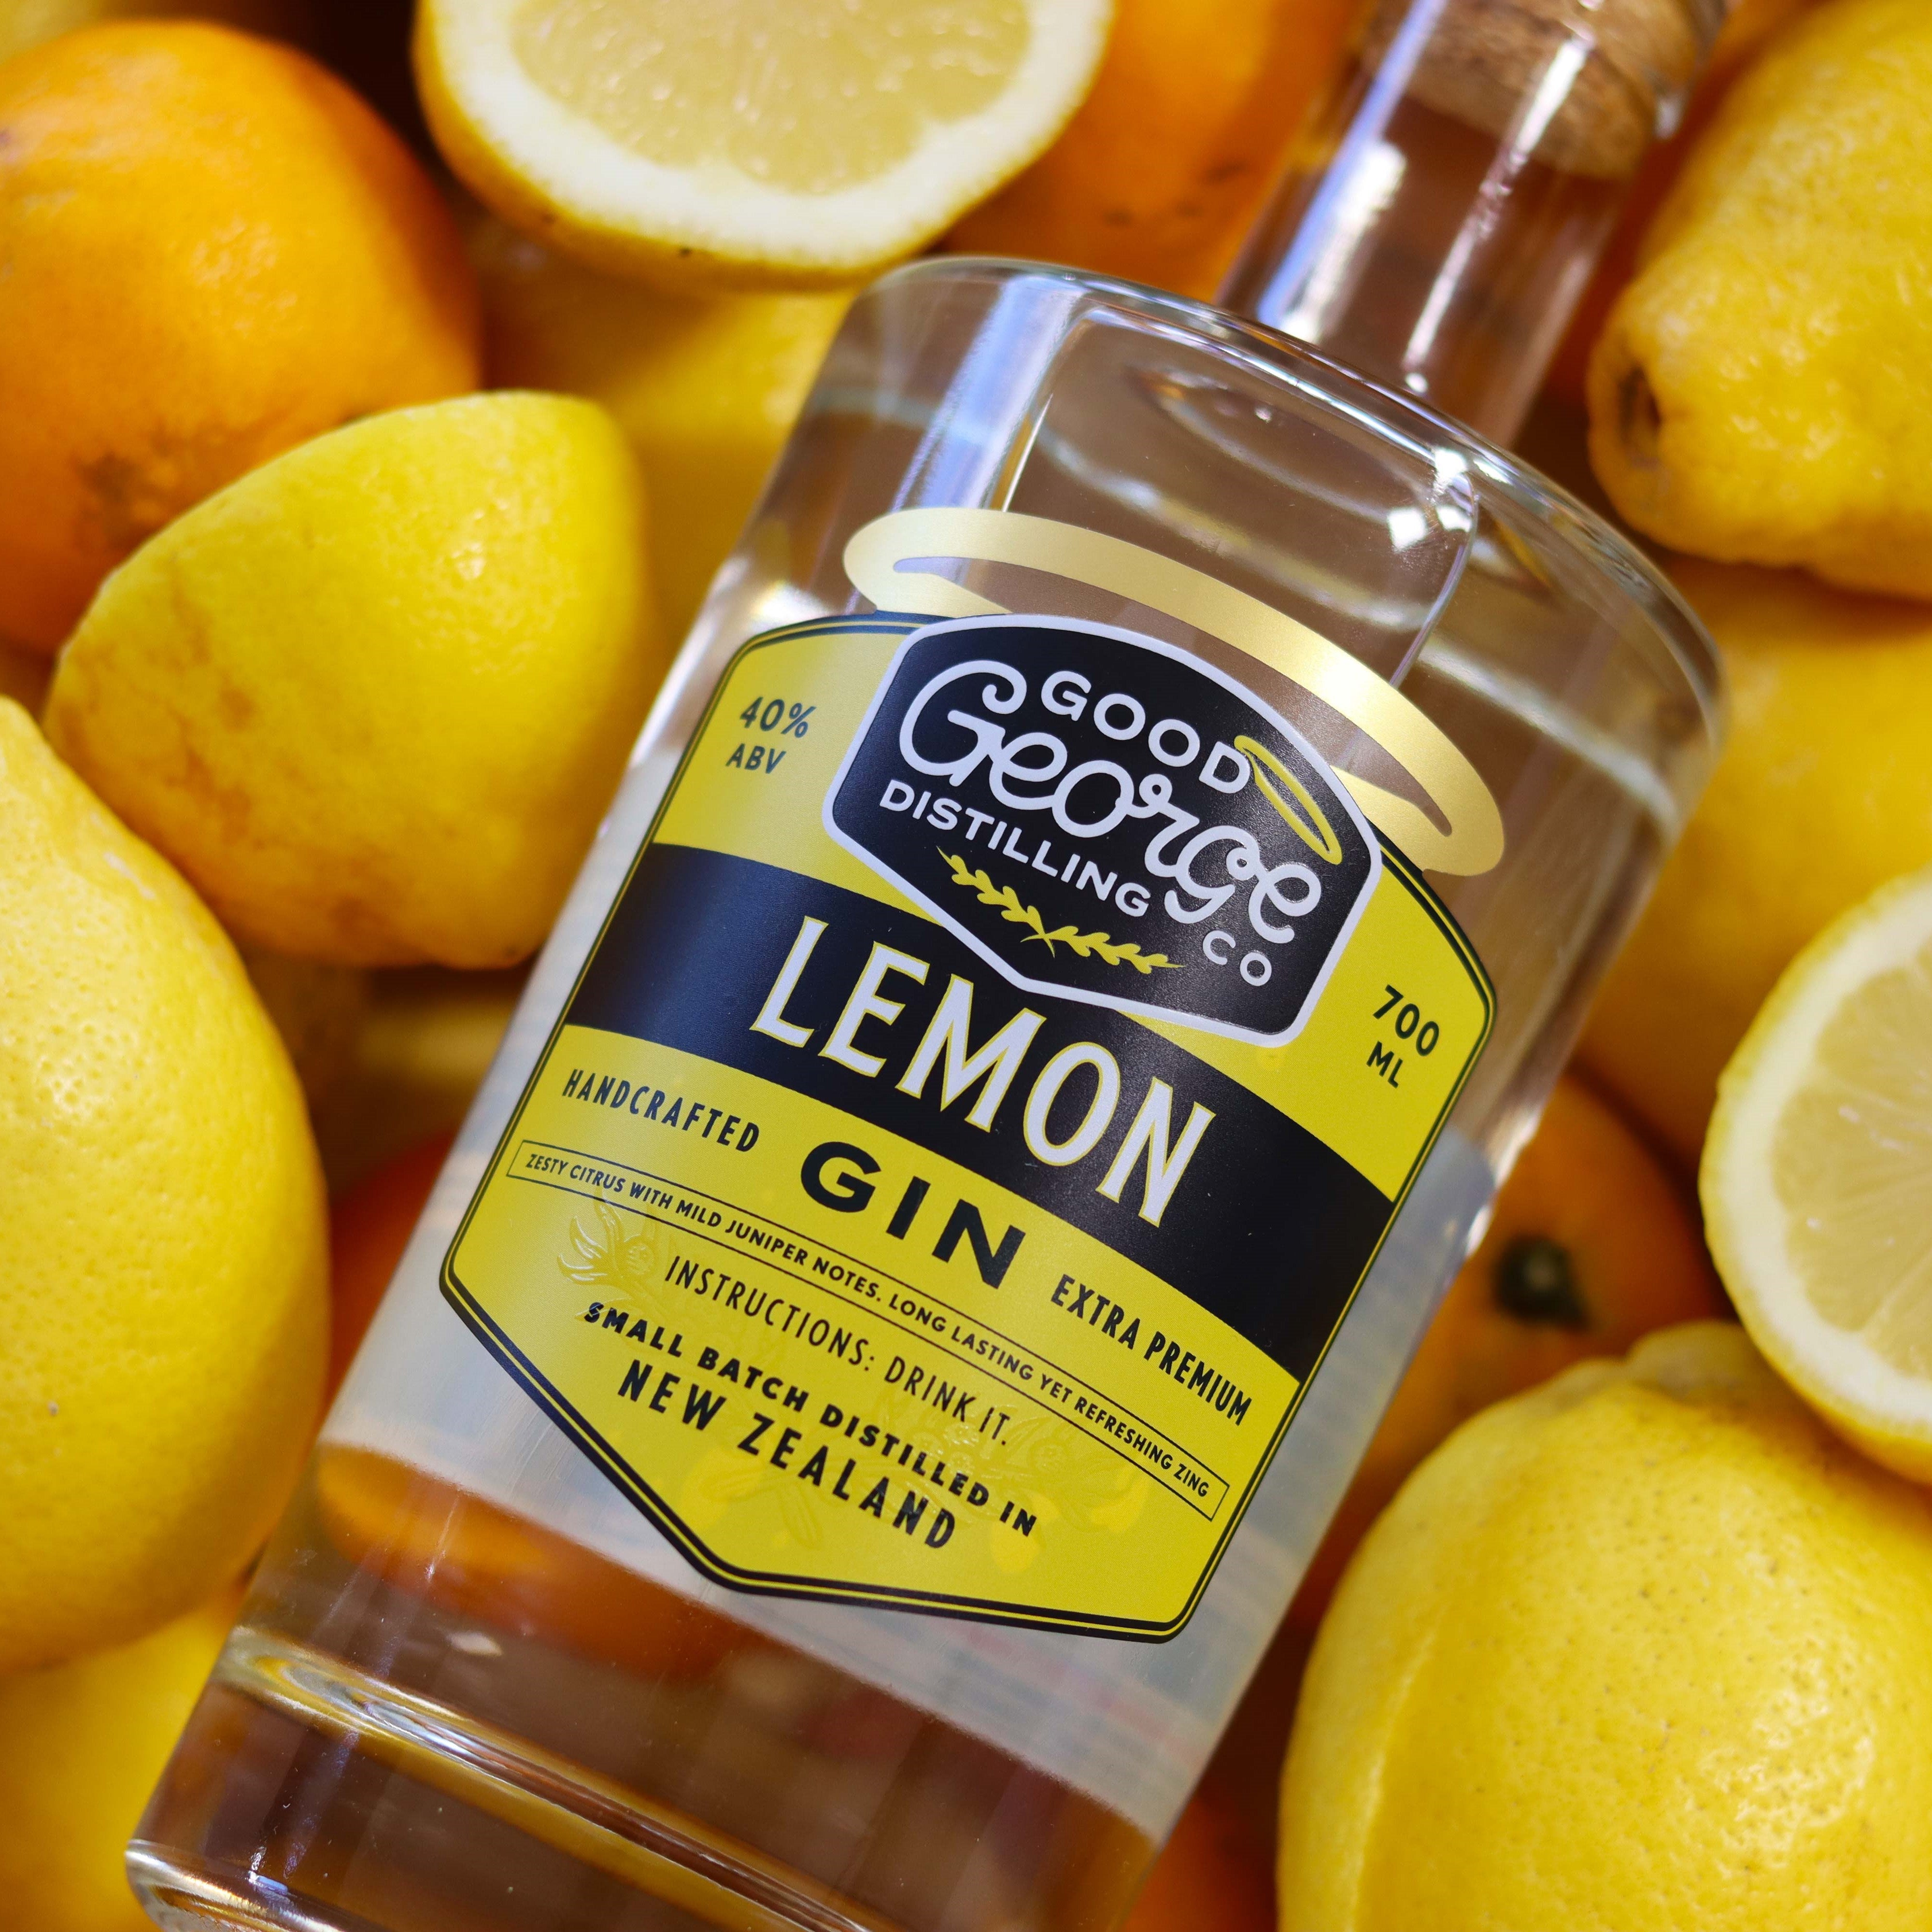 Good George Lemon Gin 700ml Bottle surrounded by lemons 